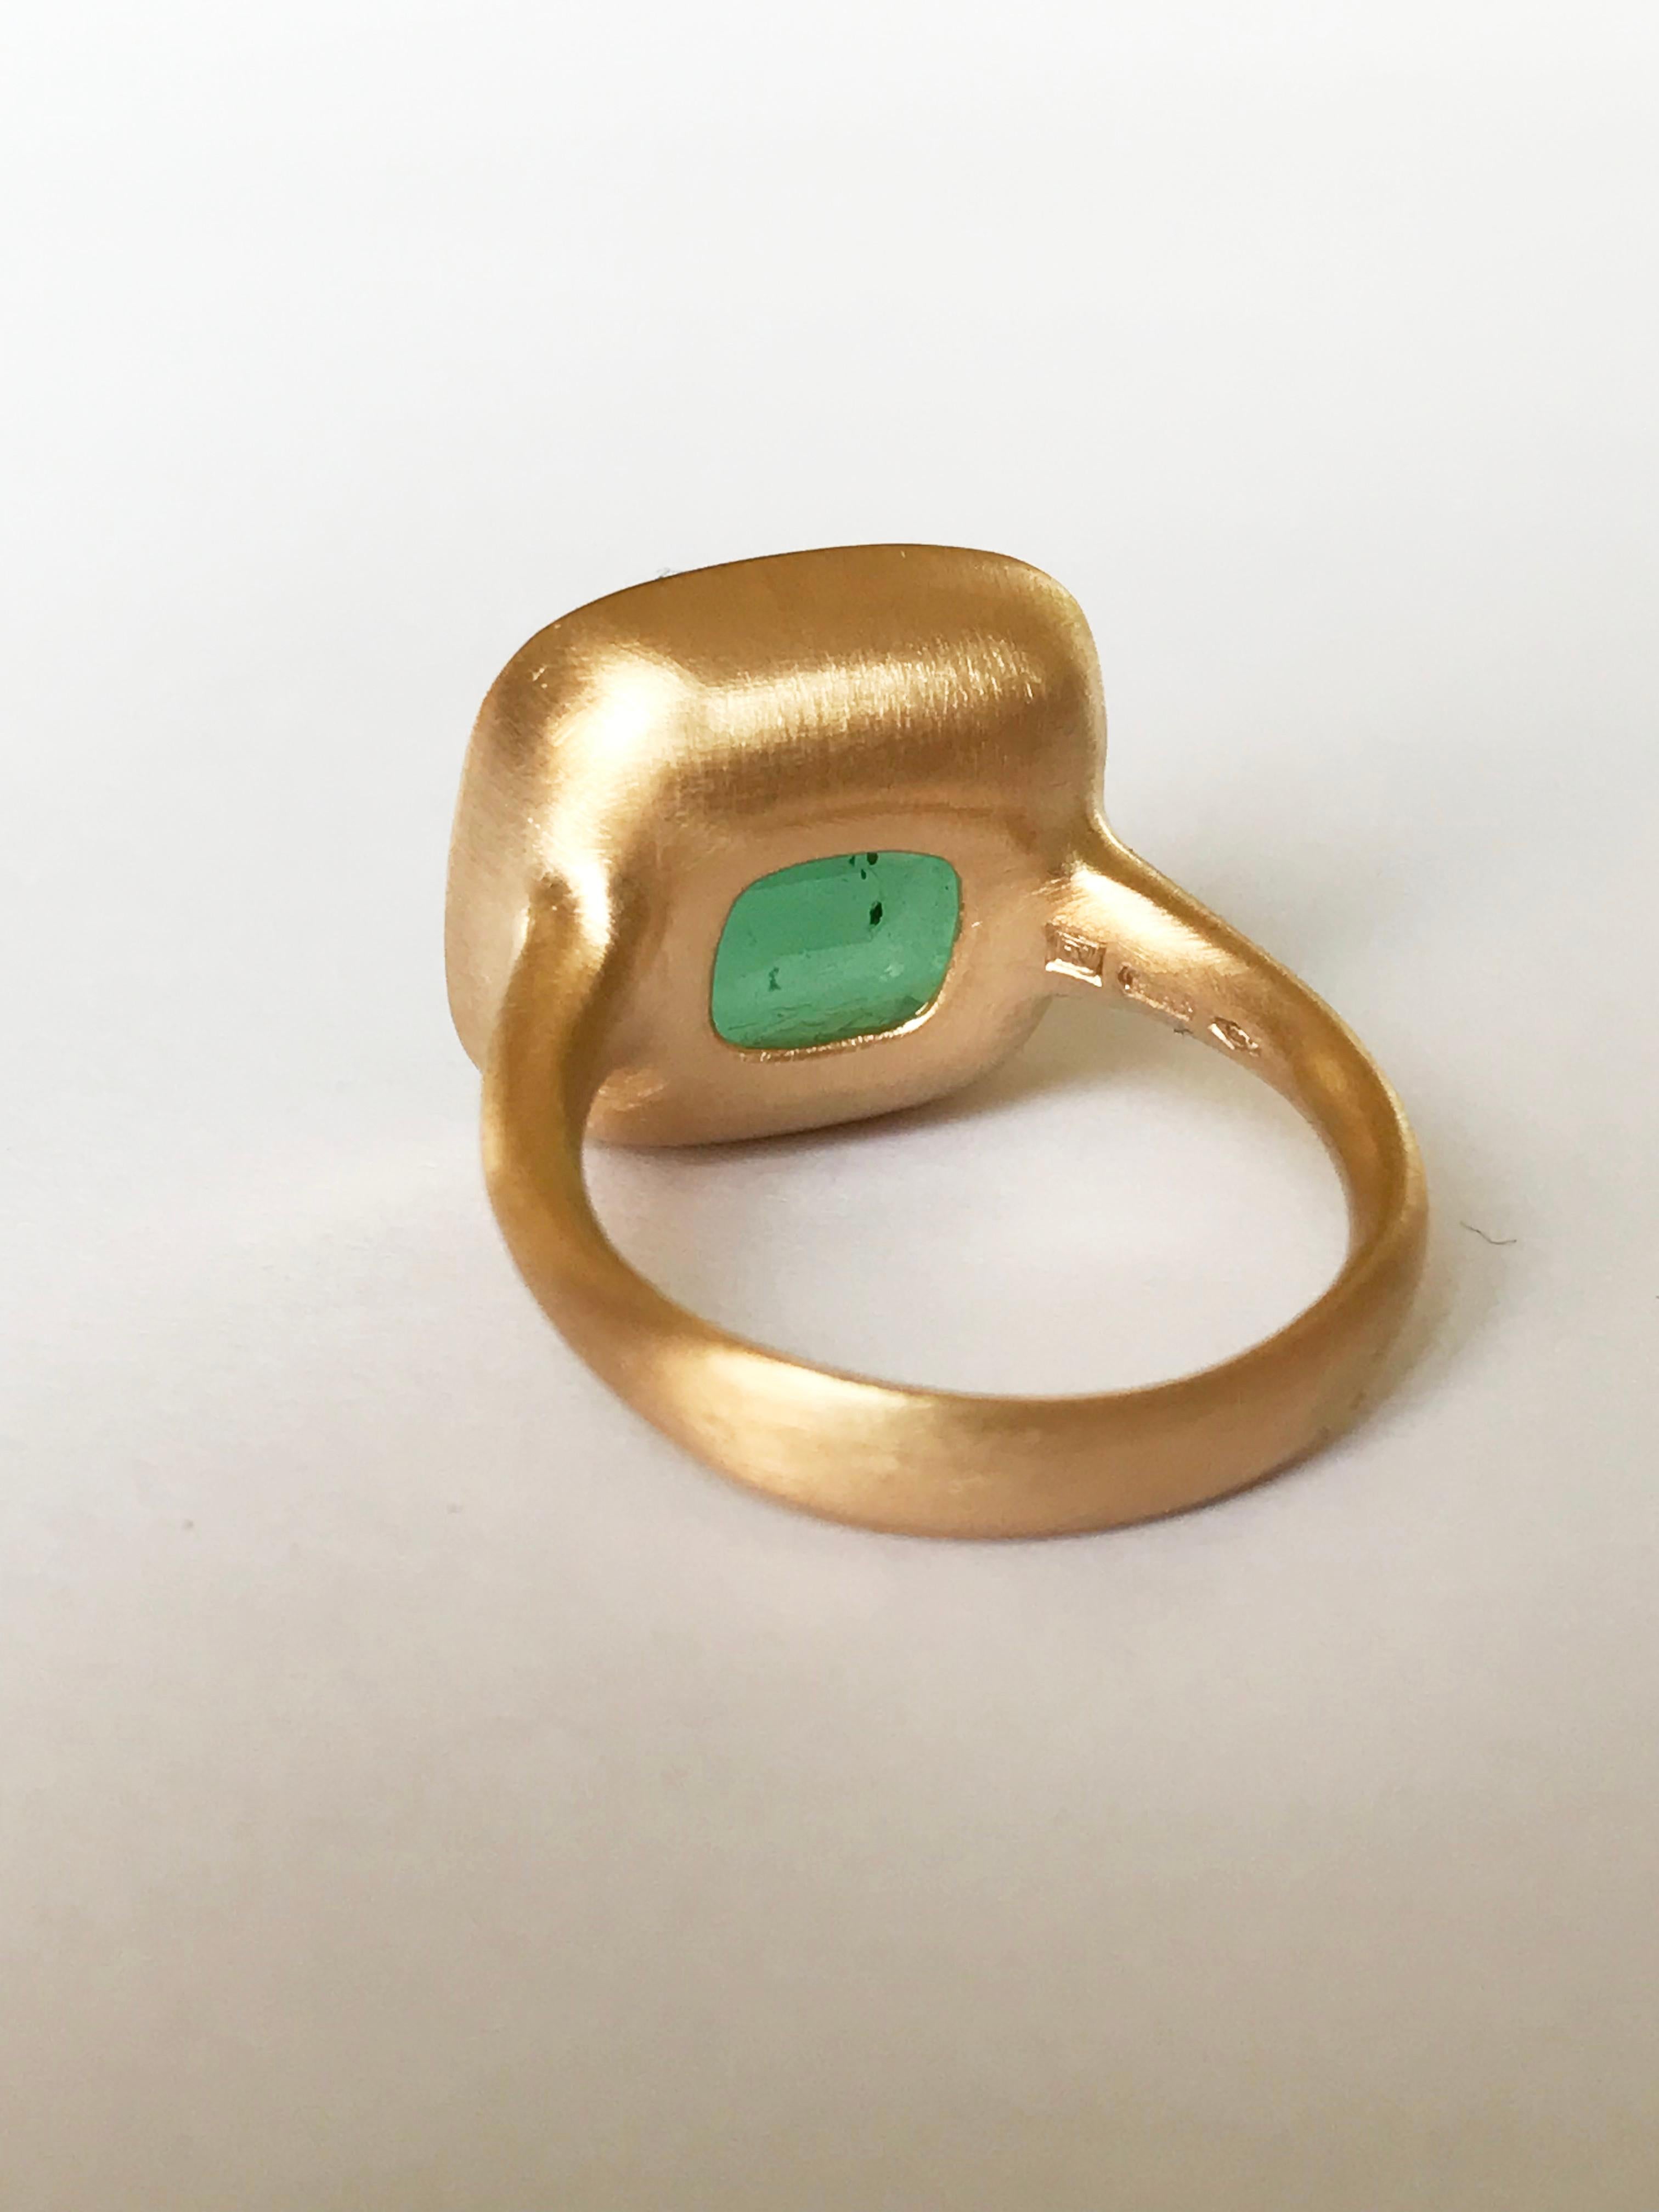 Dalben 12.04 Carat Emerald Yellow Gold Ring 4